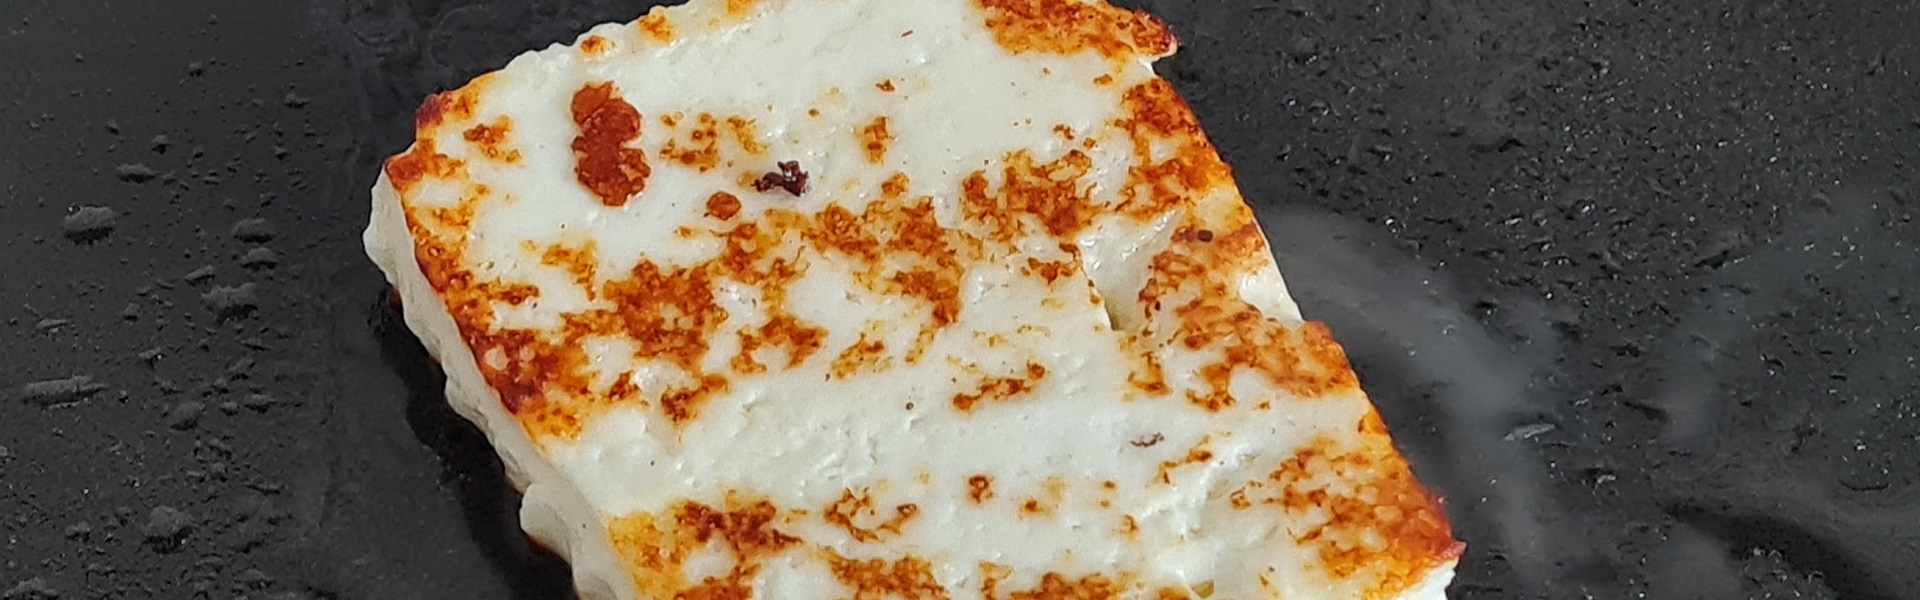 адыгейский сыр плавится в духовке на пицце ли фото 36